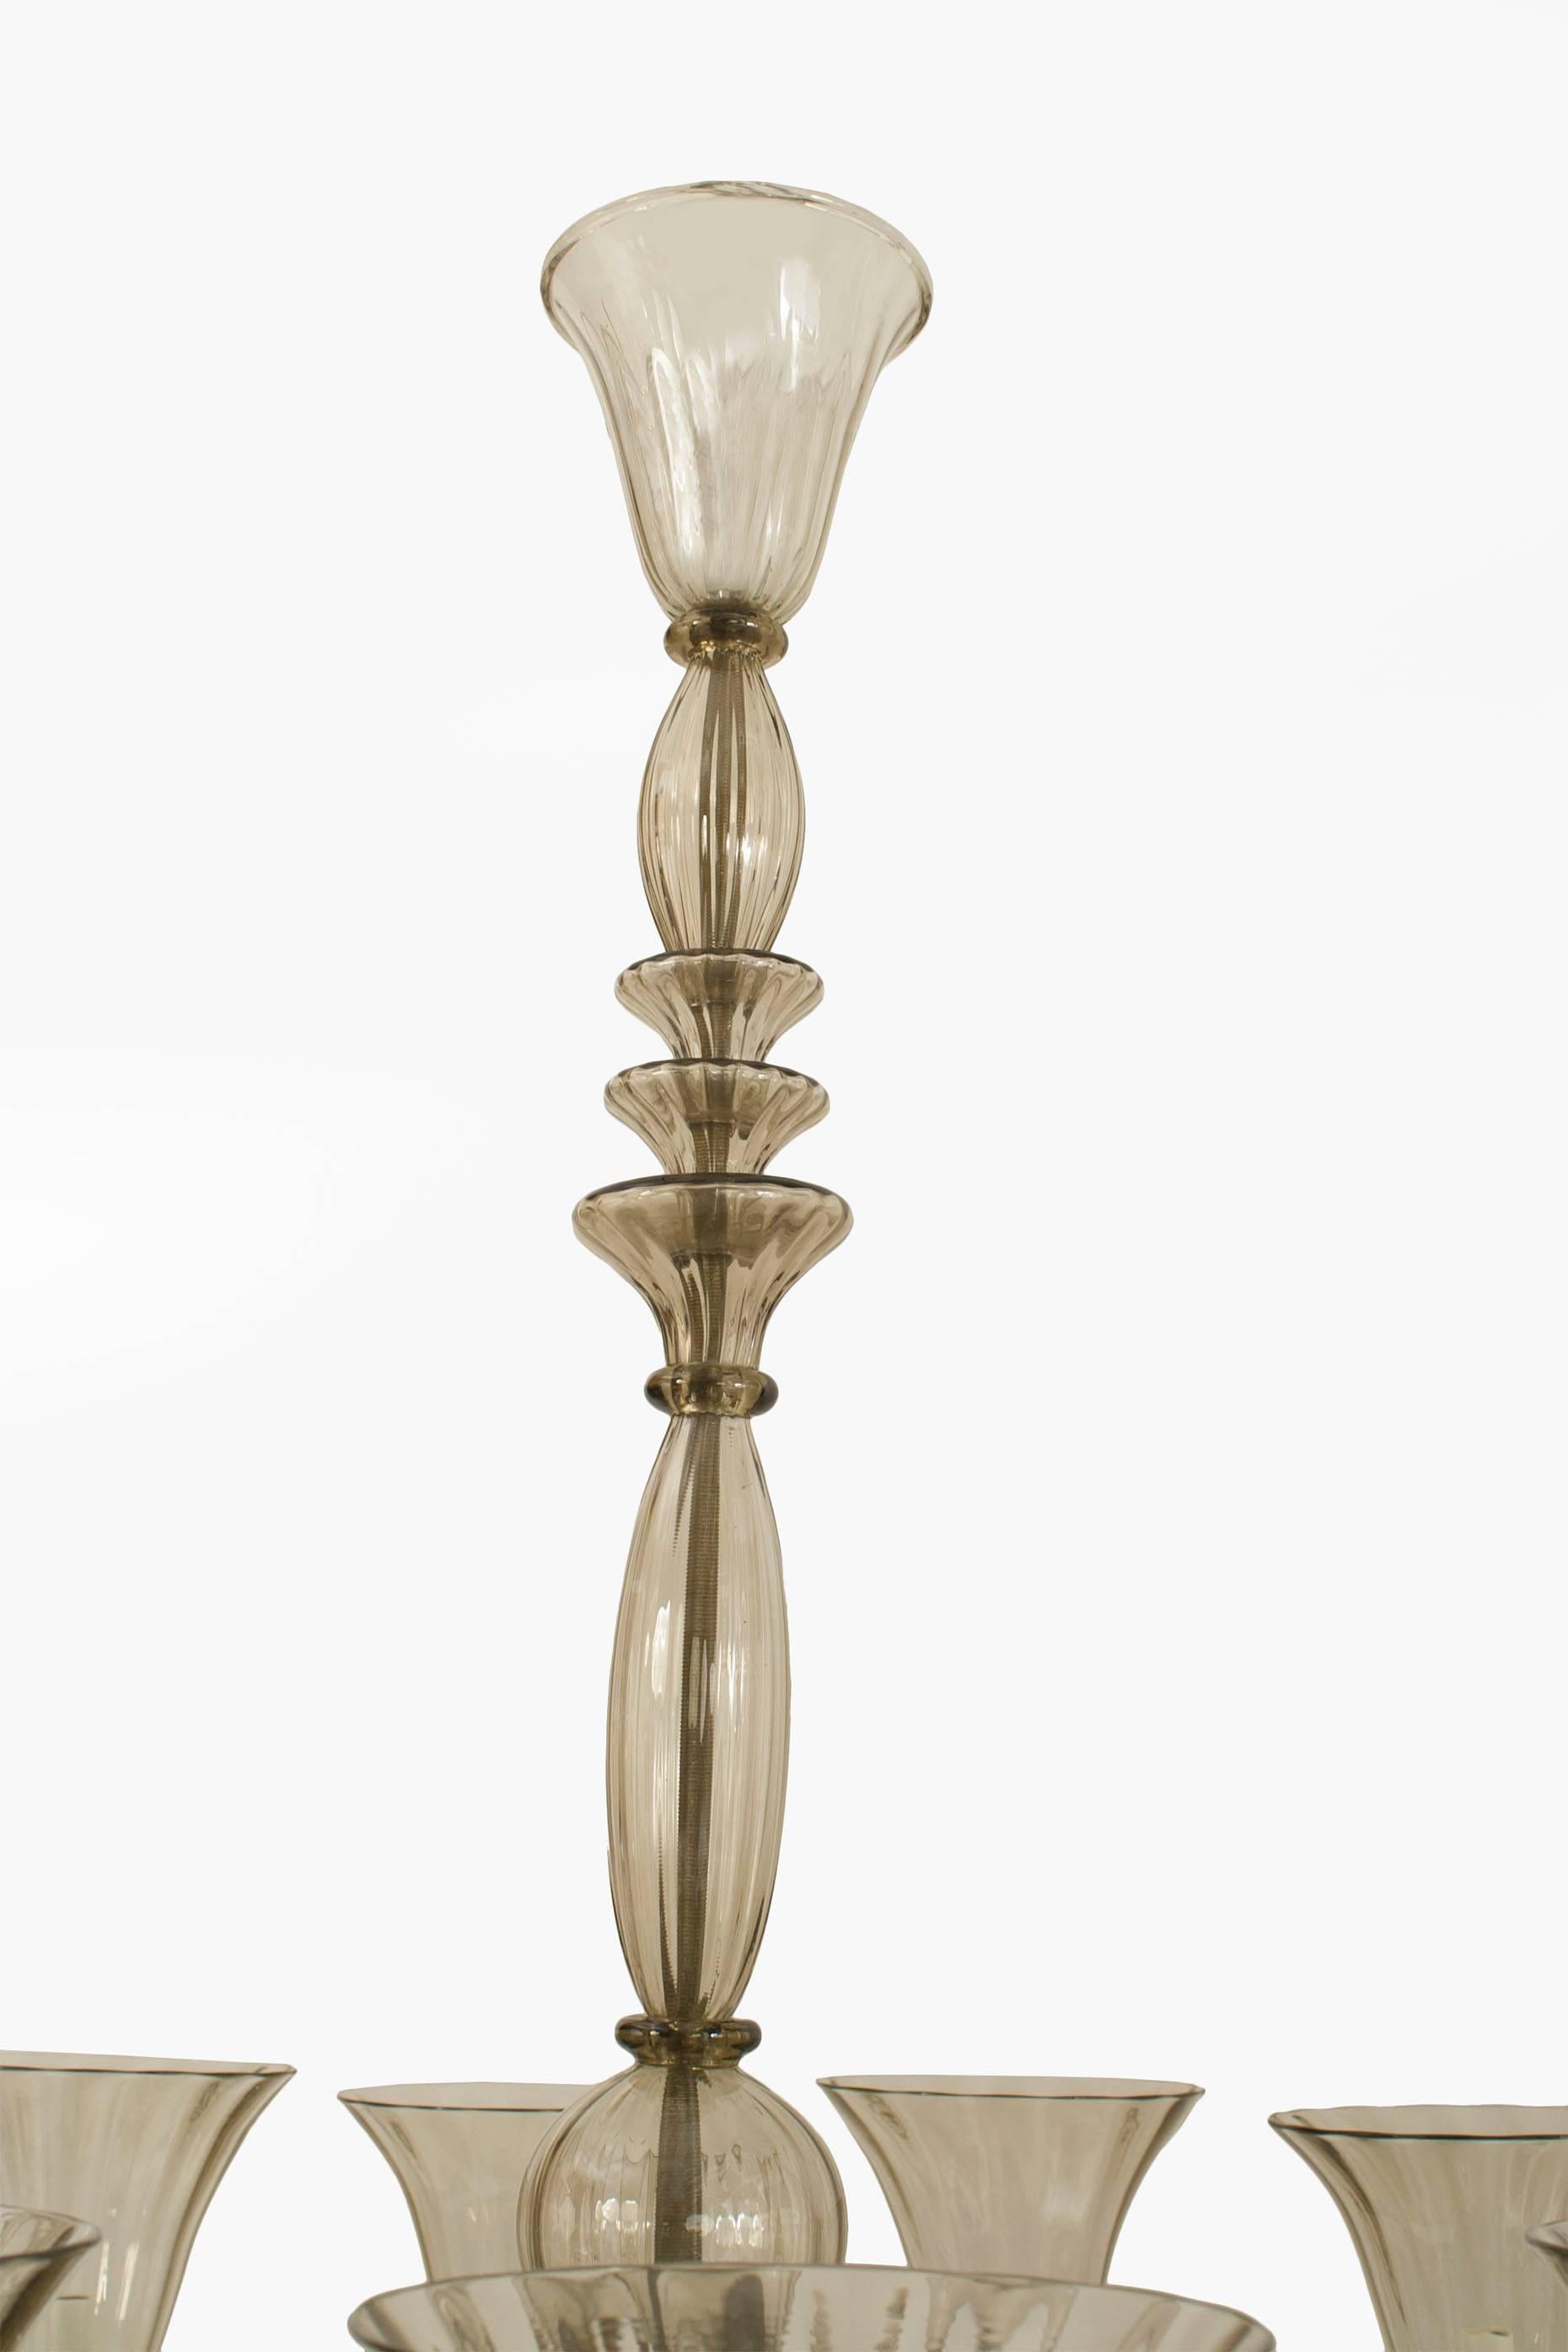 Italienischer, venezianischer Murano-Kronleuchter (um 1940) aus mundgeblasenem, getöntem, geriffeltem Glas mit 12 Armen, der ausgestellte Lampenschirme und einen gestaffelten Mittelpfosten und einen abschließenden Boden trägt (von SEGUSO)
